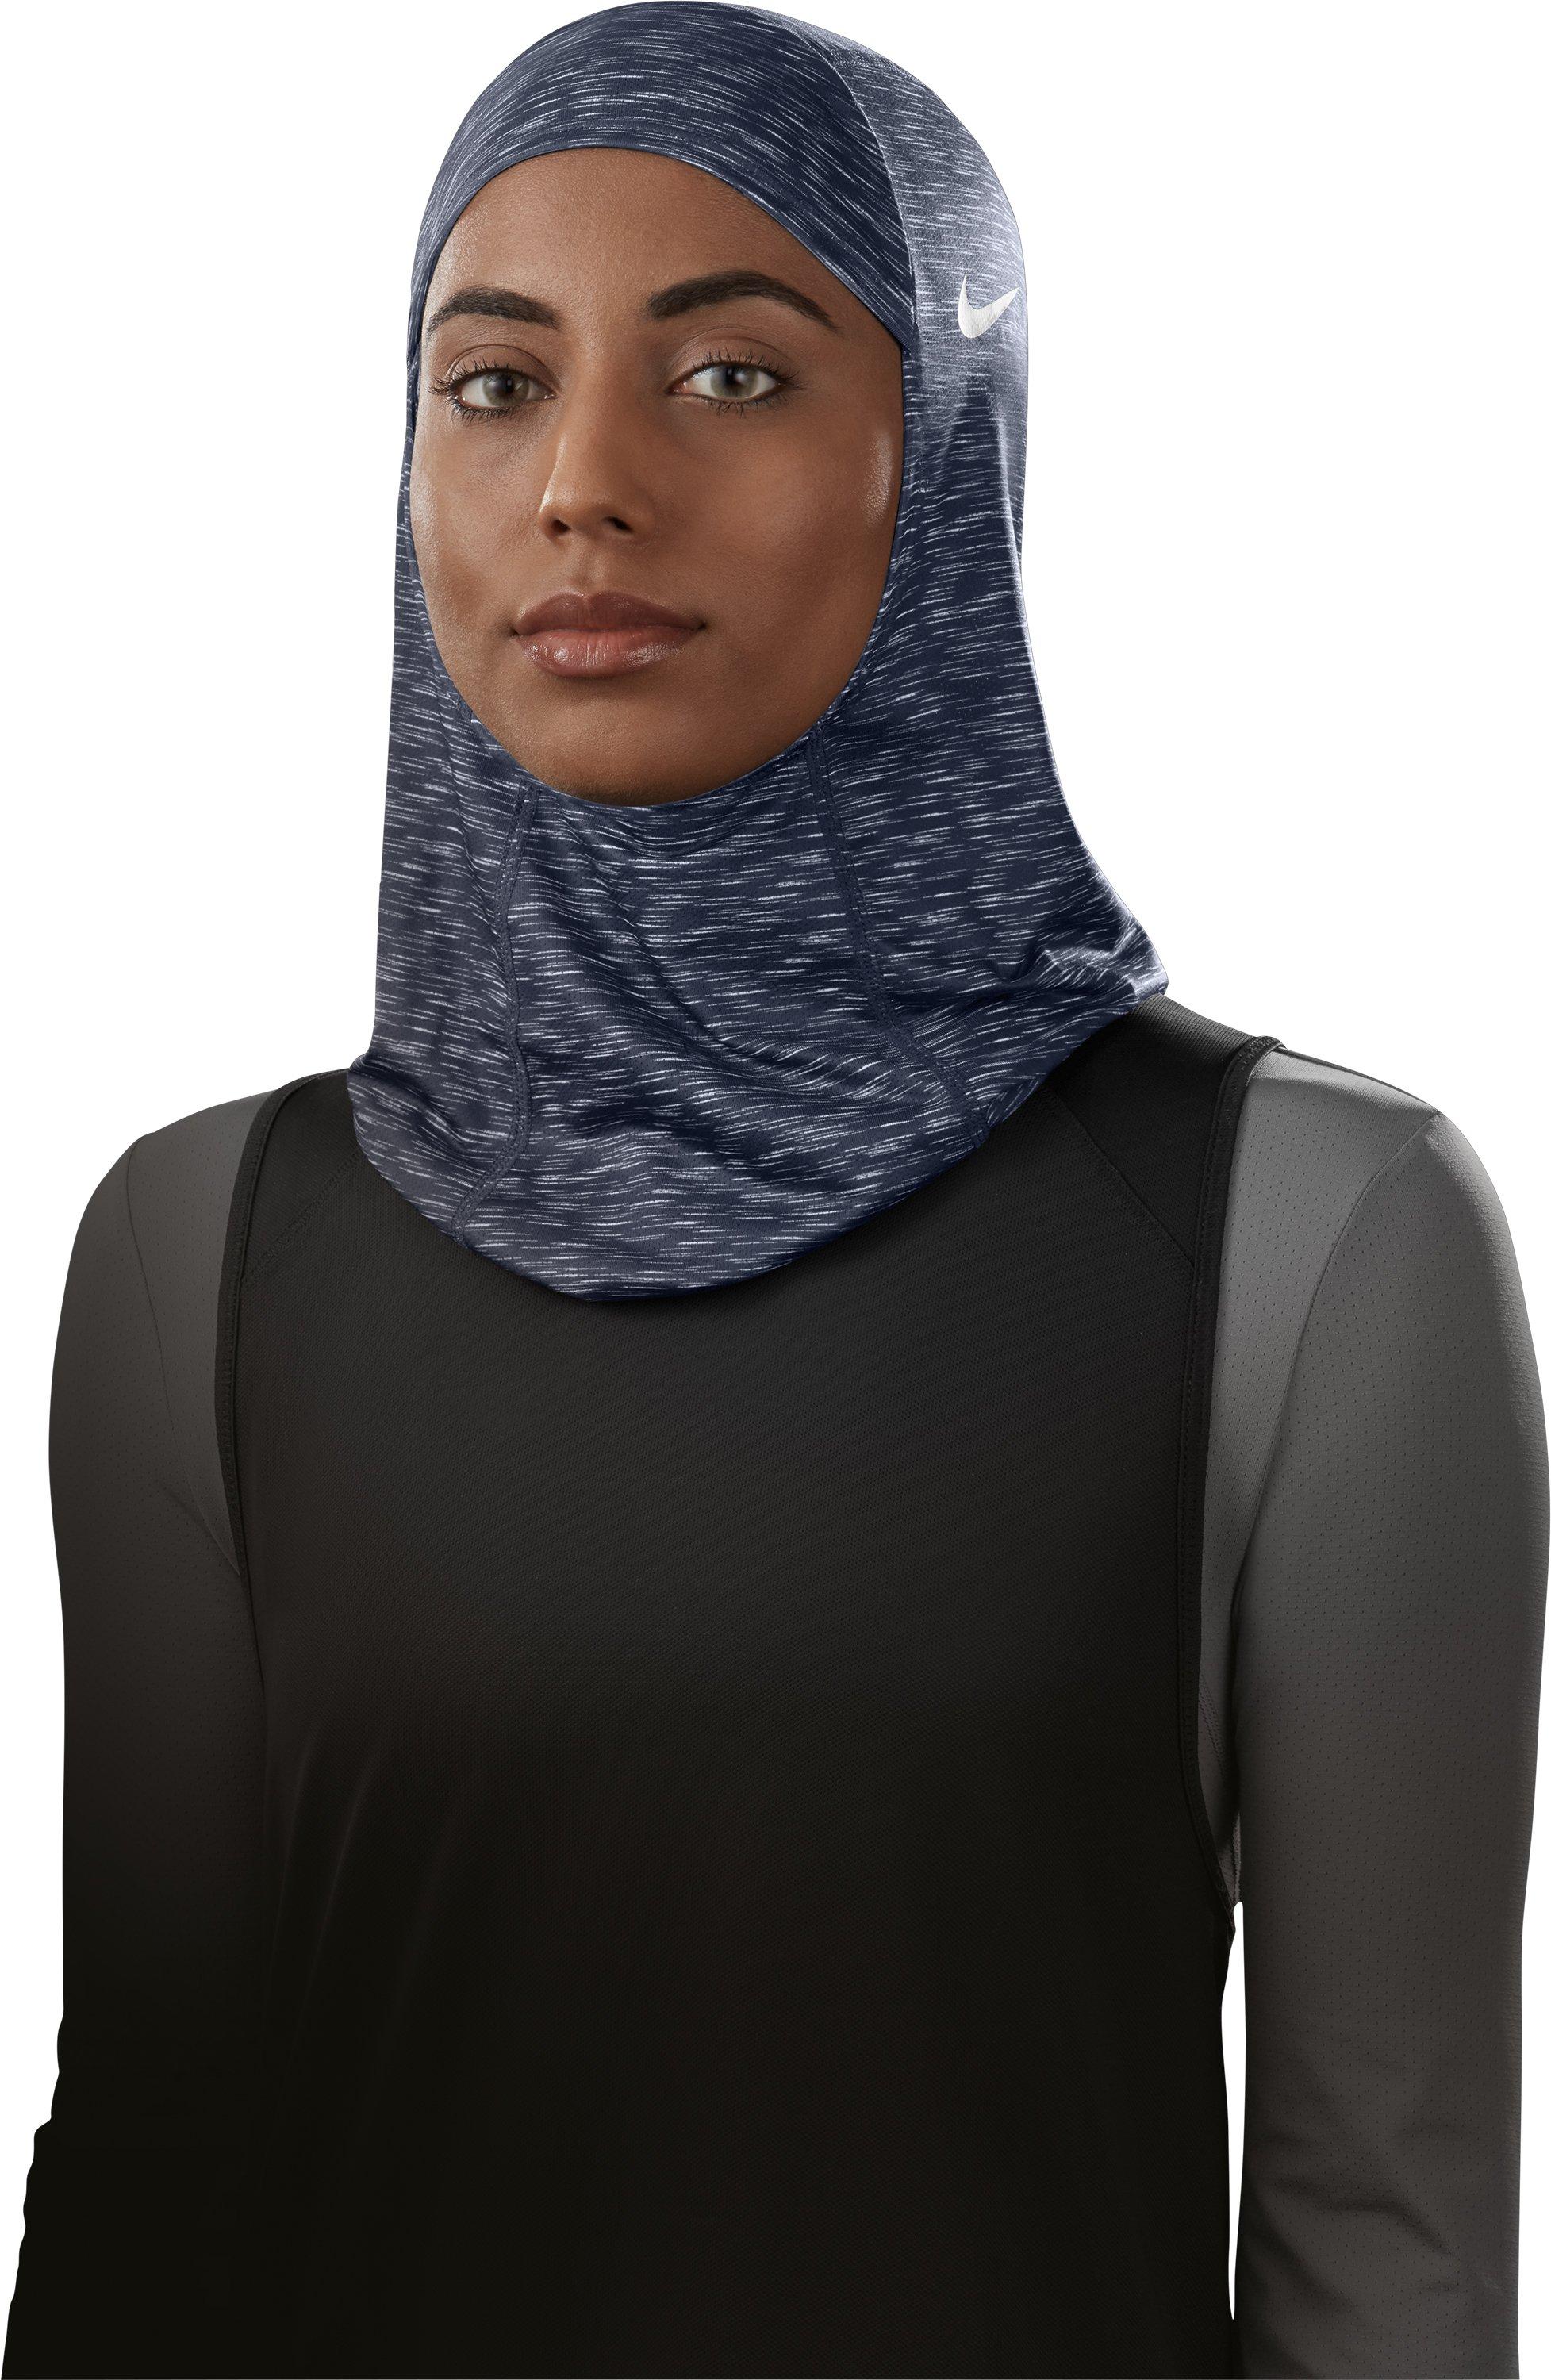 nike pro 2.0 hijab